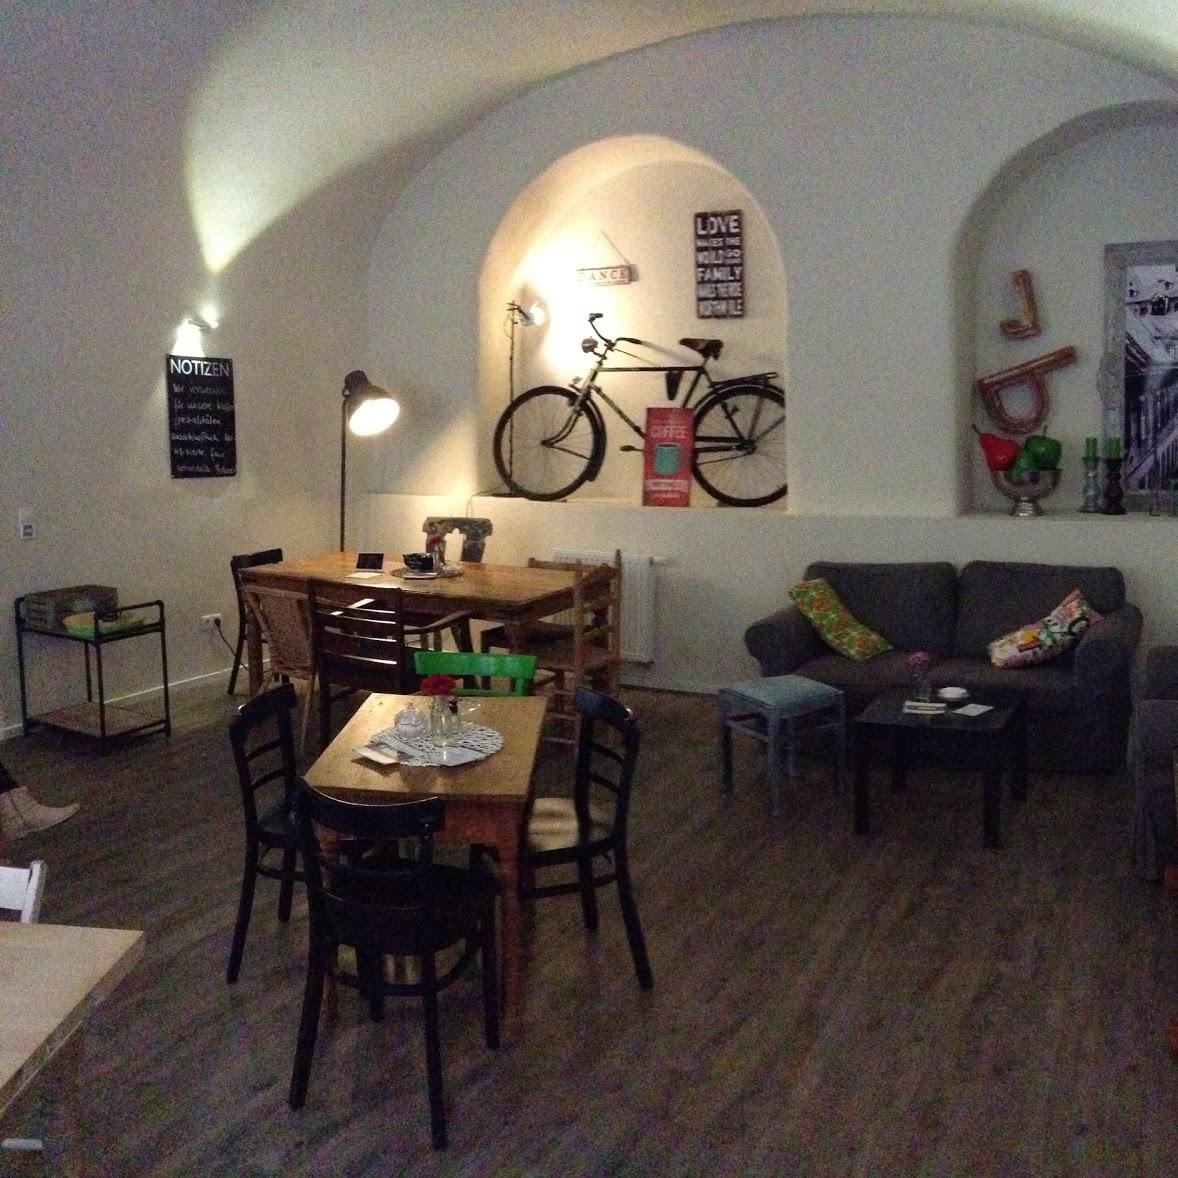 Restaurant "Café Leander" in Bamberg